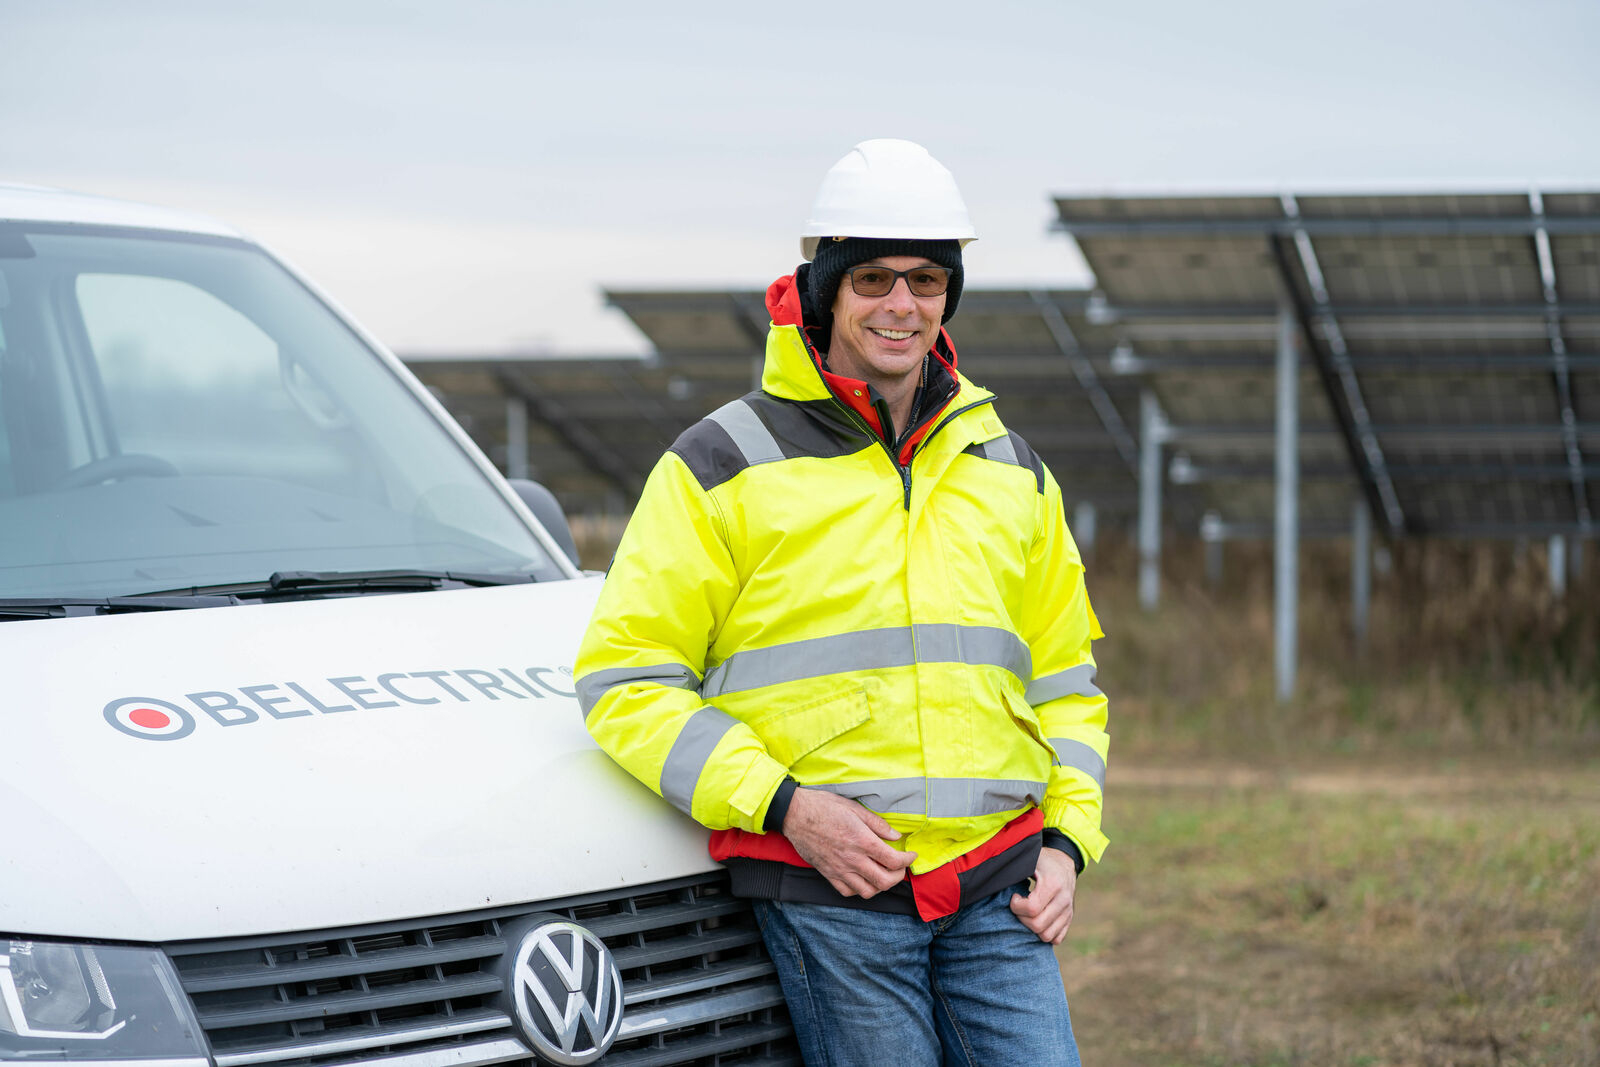 Riesensolarpark in Mecklenburg: Hier liefert die Sonne bald sauberen Strom für E-Autos